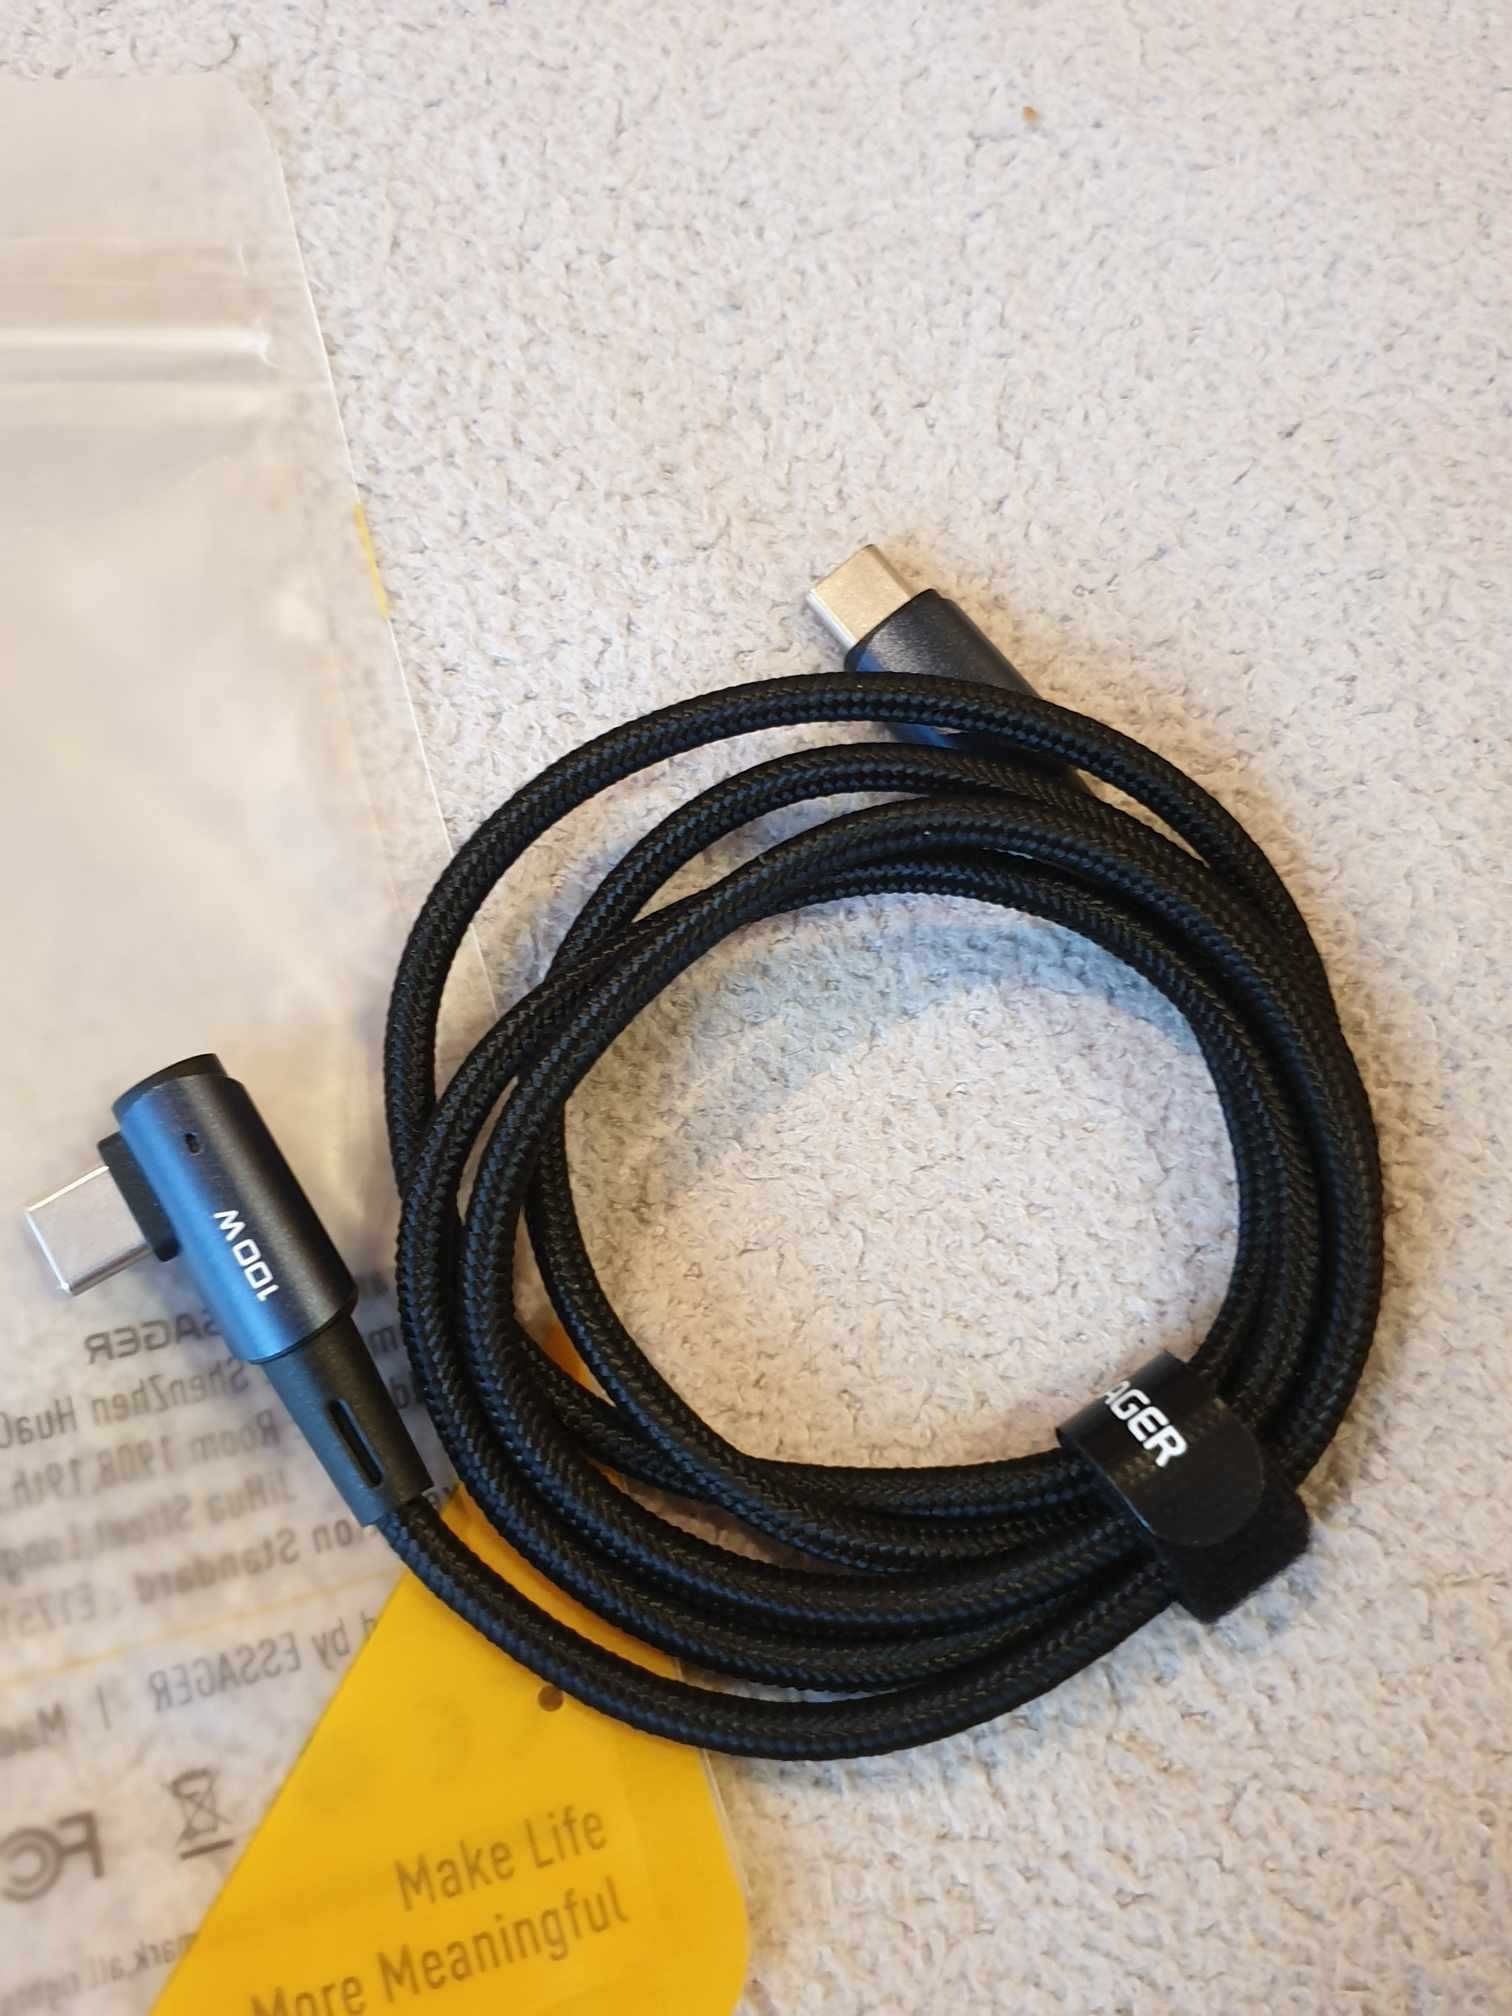 Kabel 1m USB-C do USB-C - Przewód z Oplotem Essager 100W